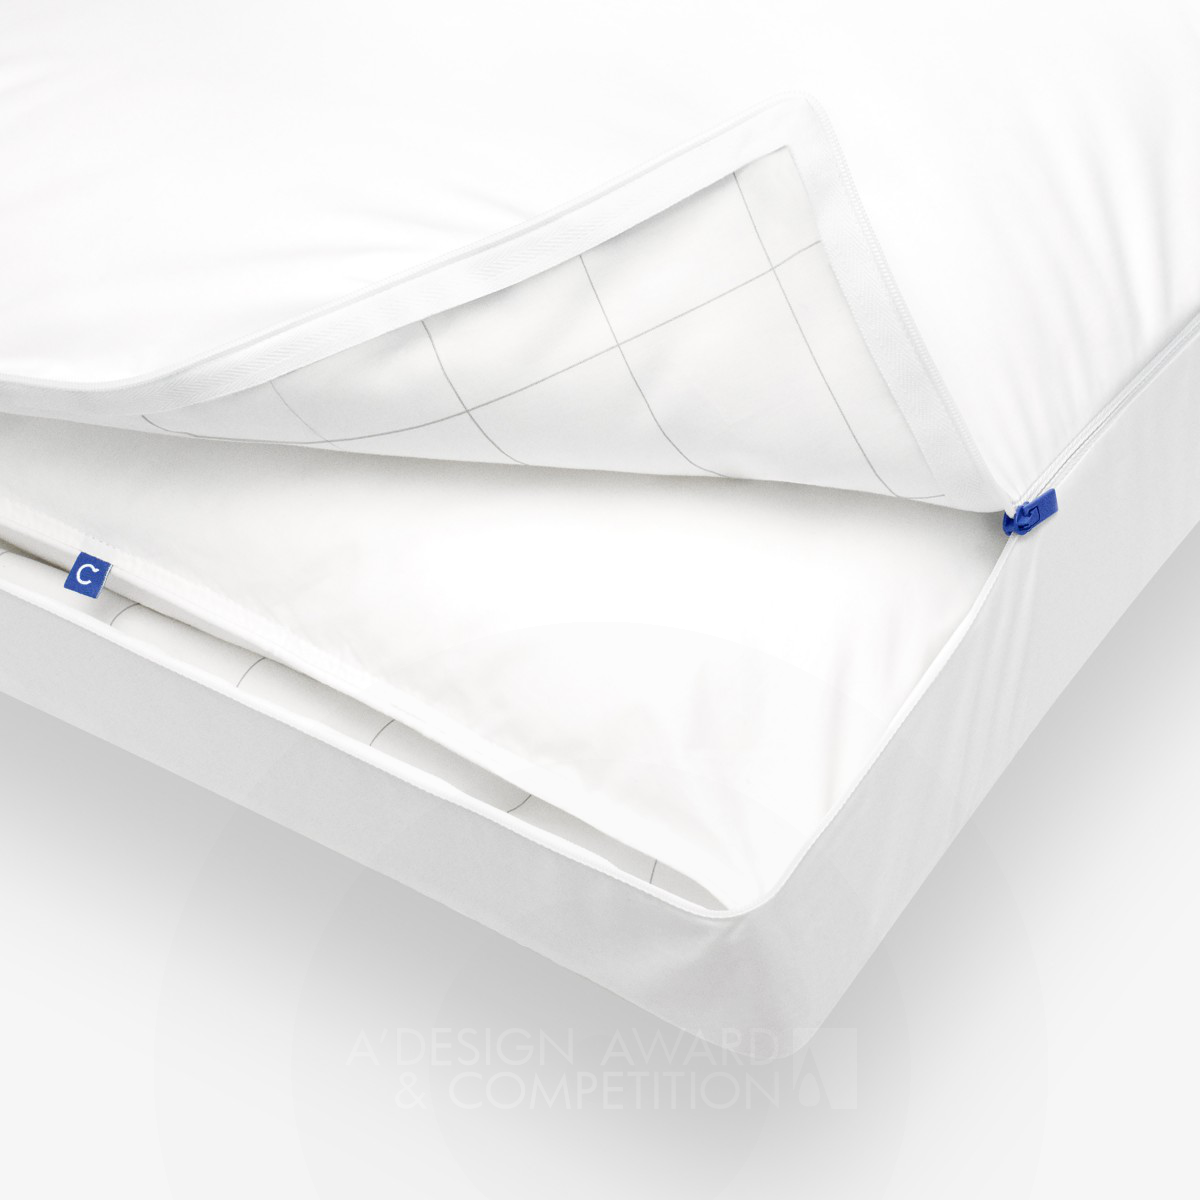 Casper Pillow Universally-comfortable Pillow